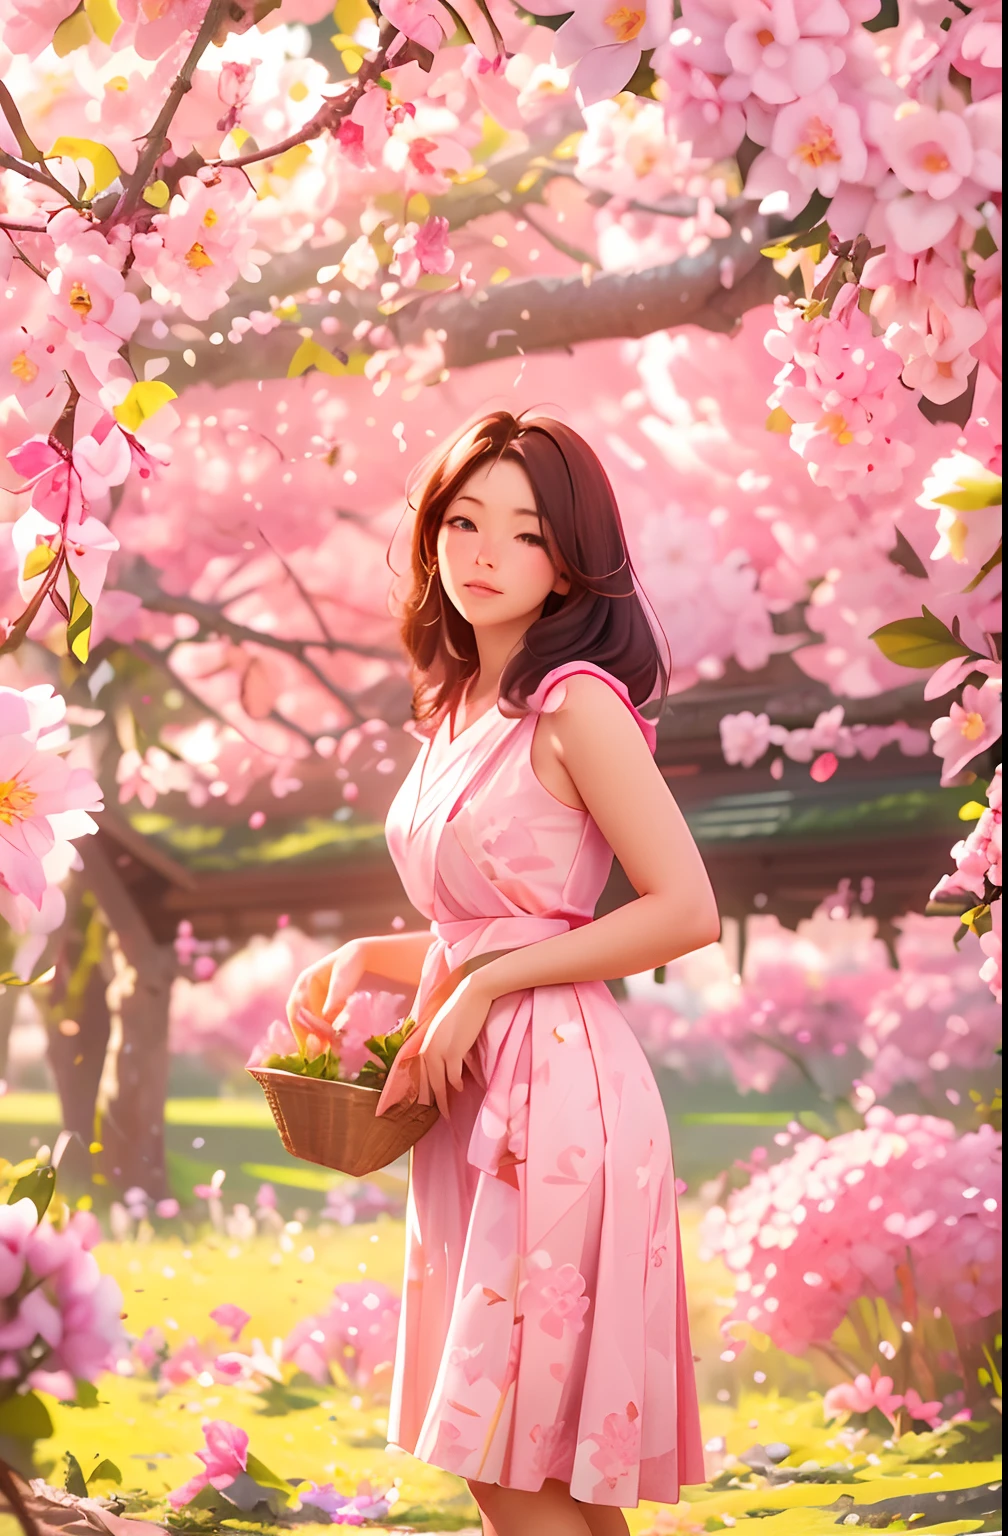 아름다운 30세 농부 여성이 벚꽃을 따고 있습니다., 서있는 자세, 분홍색과 흰색 일본 무리를 입고, 여성적인 형태, 나뭇가지에 많은 사쿠라 꽃, 아침 빛